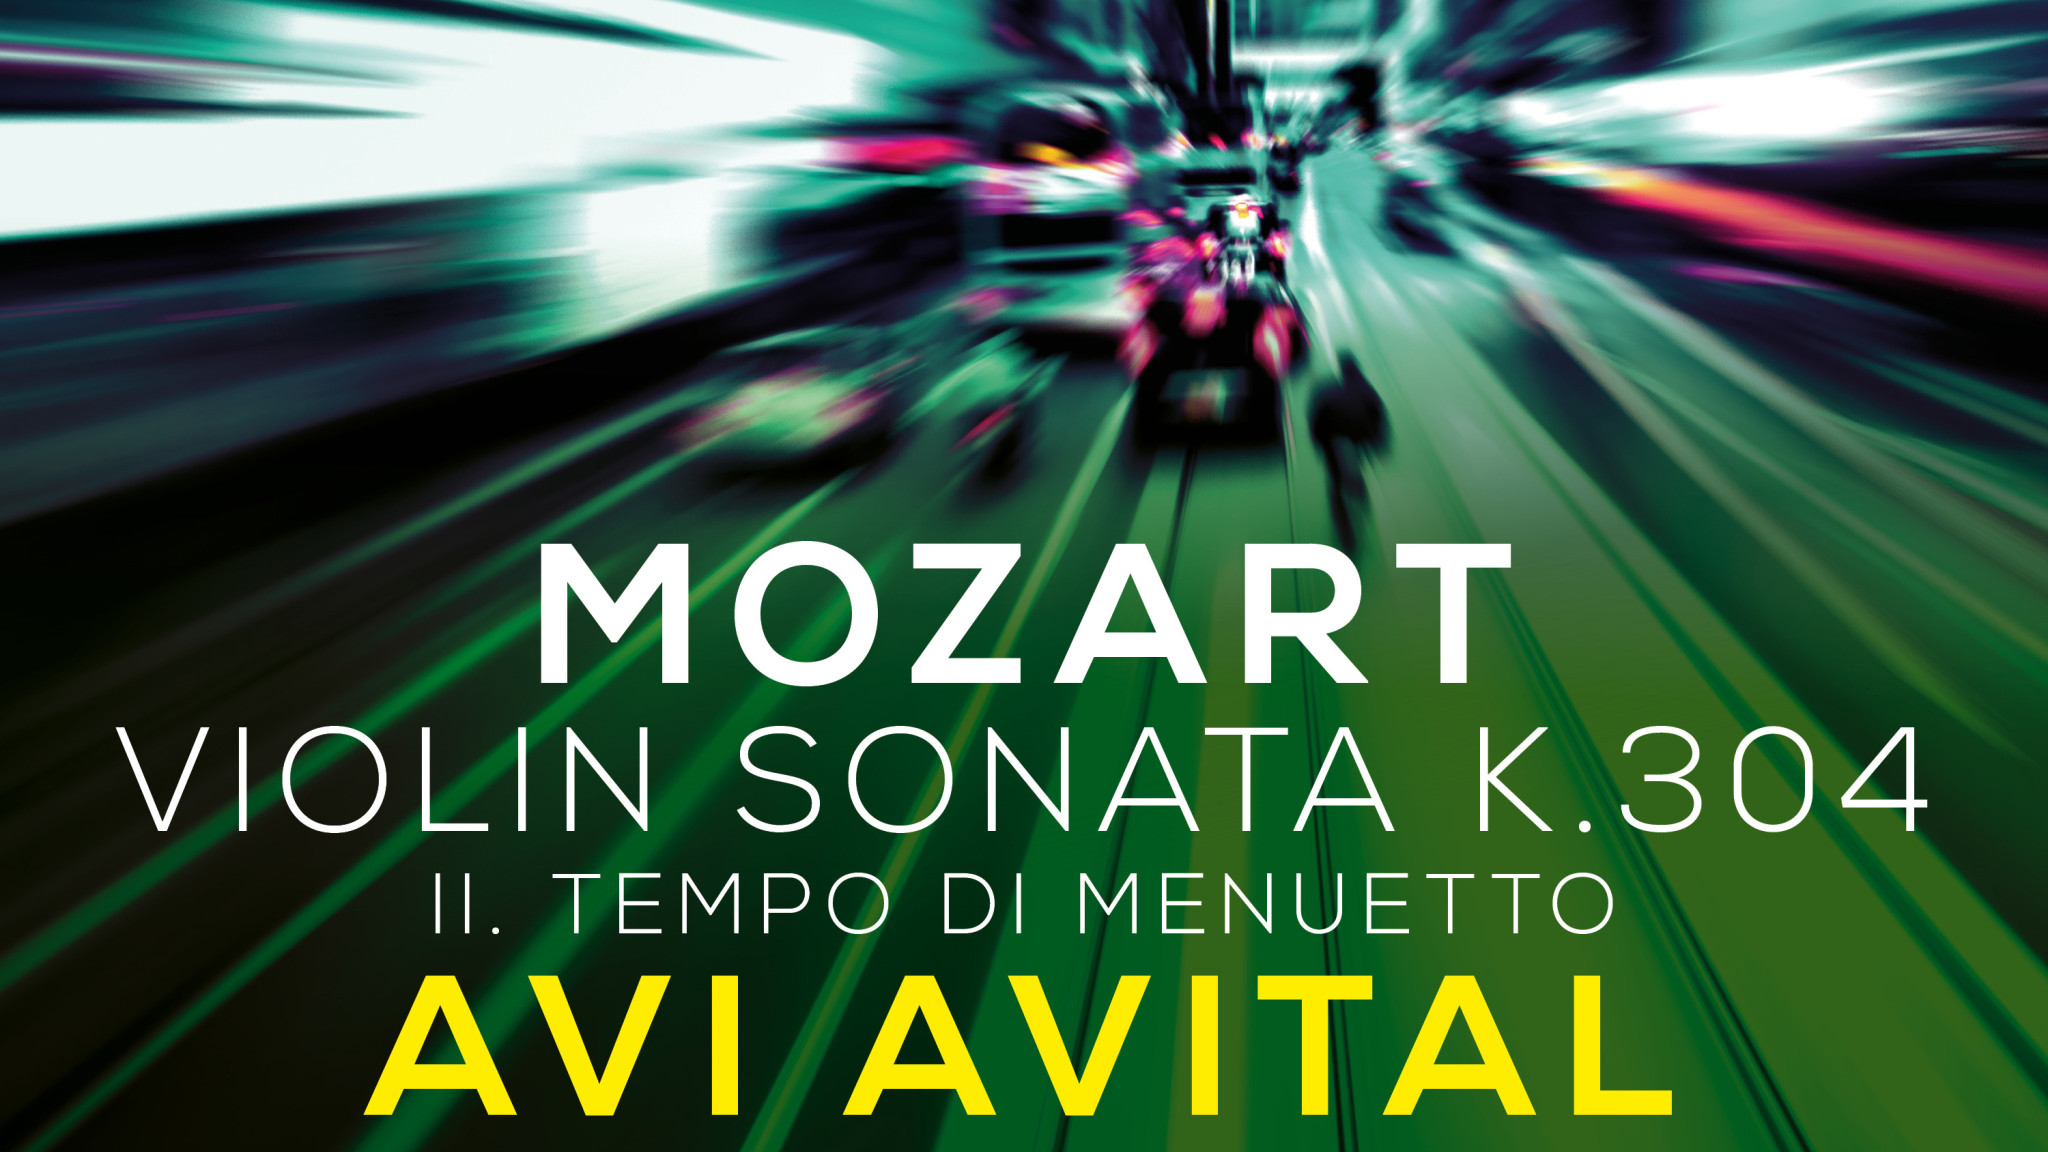 Mozart auf der Mandoline – Musical Moments mit Avi Avital